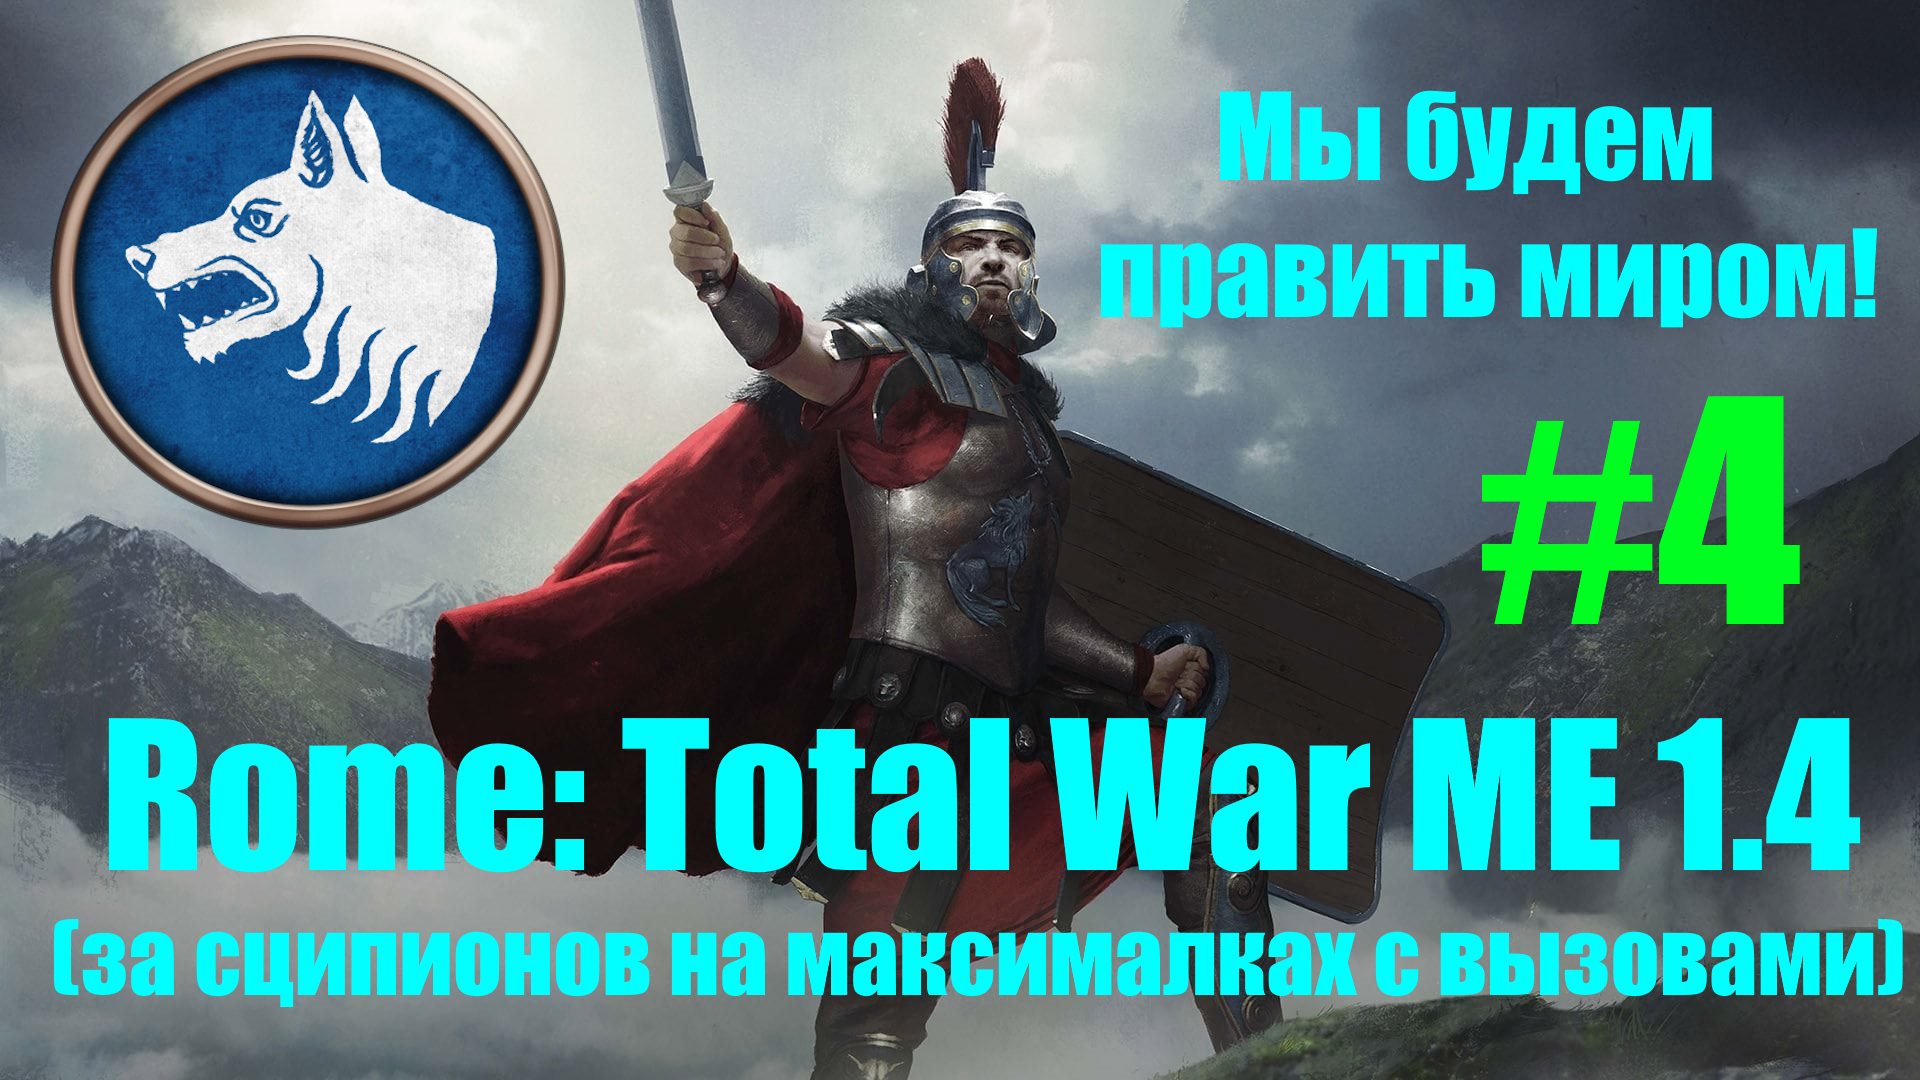 Macedon Expansion 1.4  (Rome: Total War). Мы будем править миром! #4